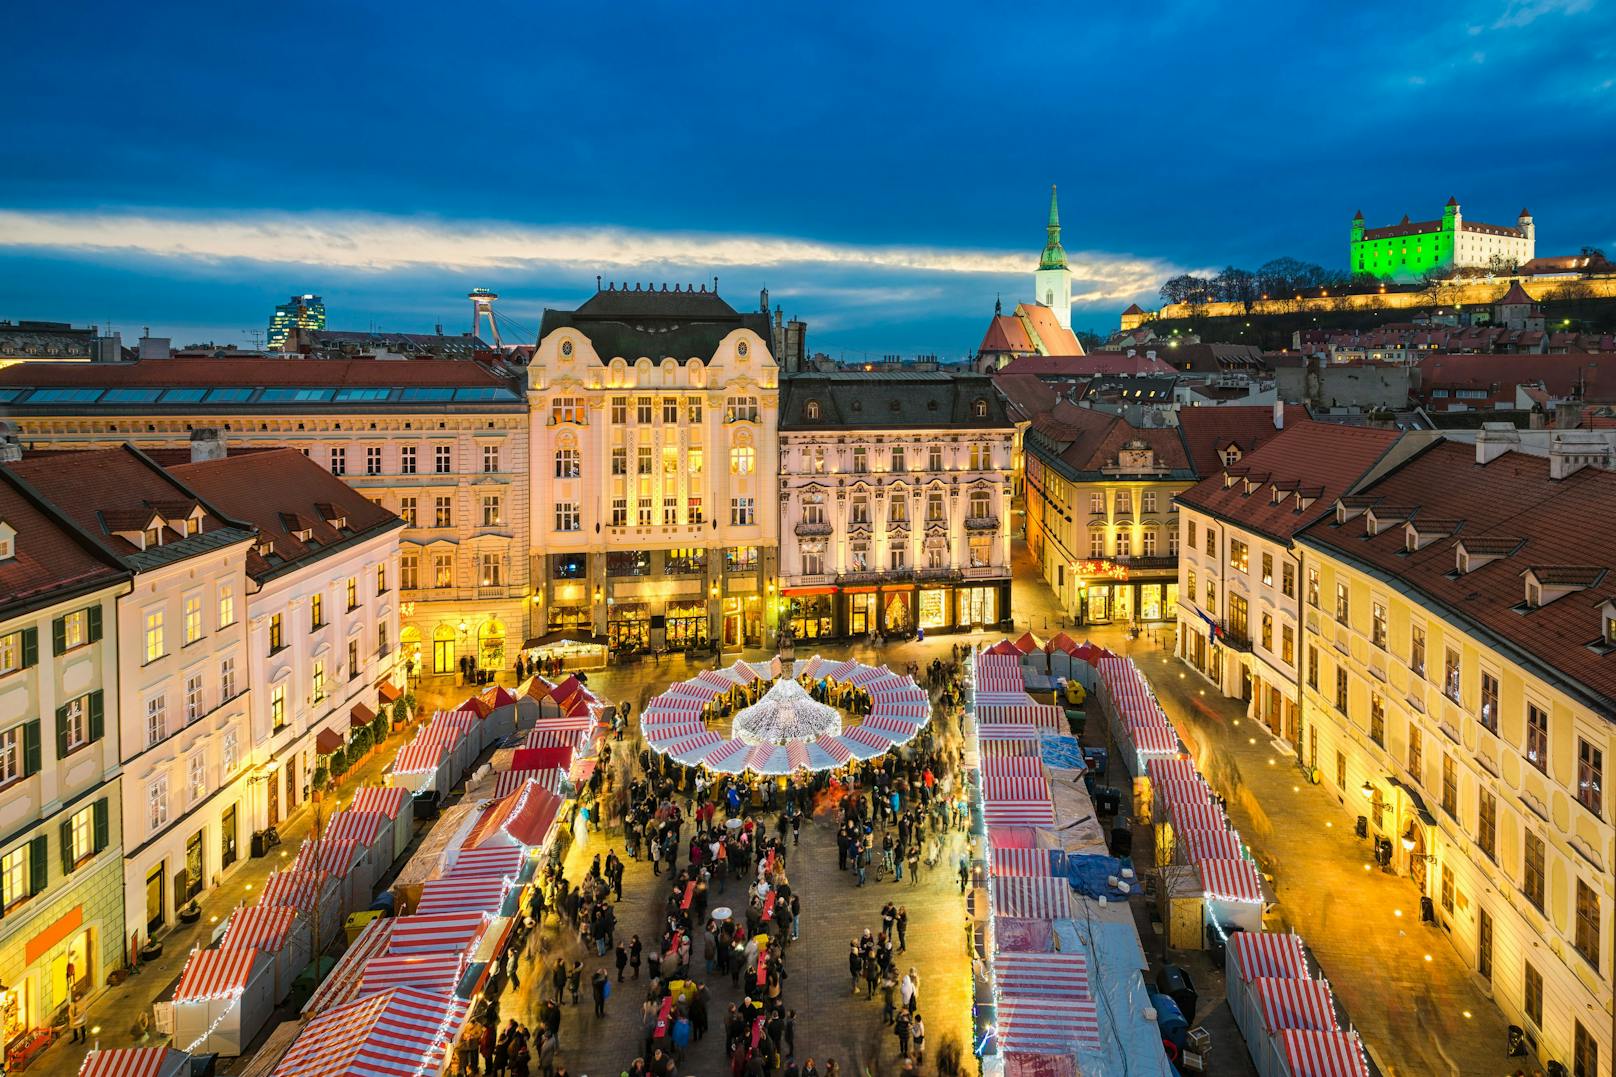 Jetzt mitmachen und das wunderschöne Weihnachtsflair der slowakischen Hauptstadt genießen.